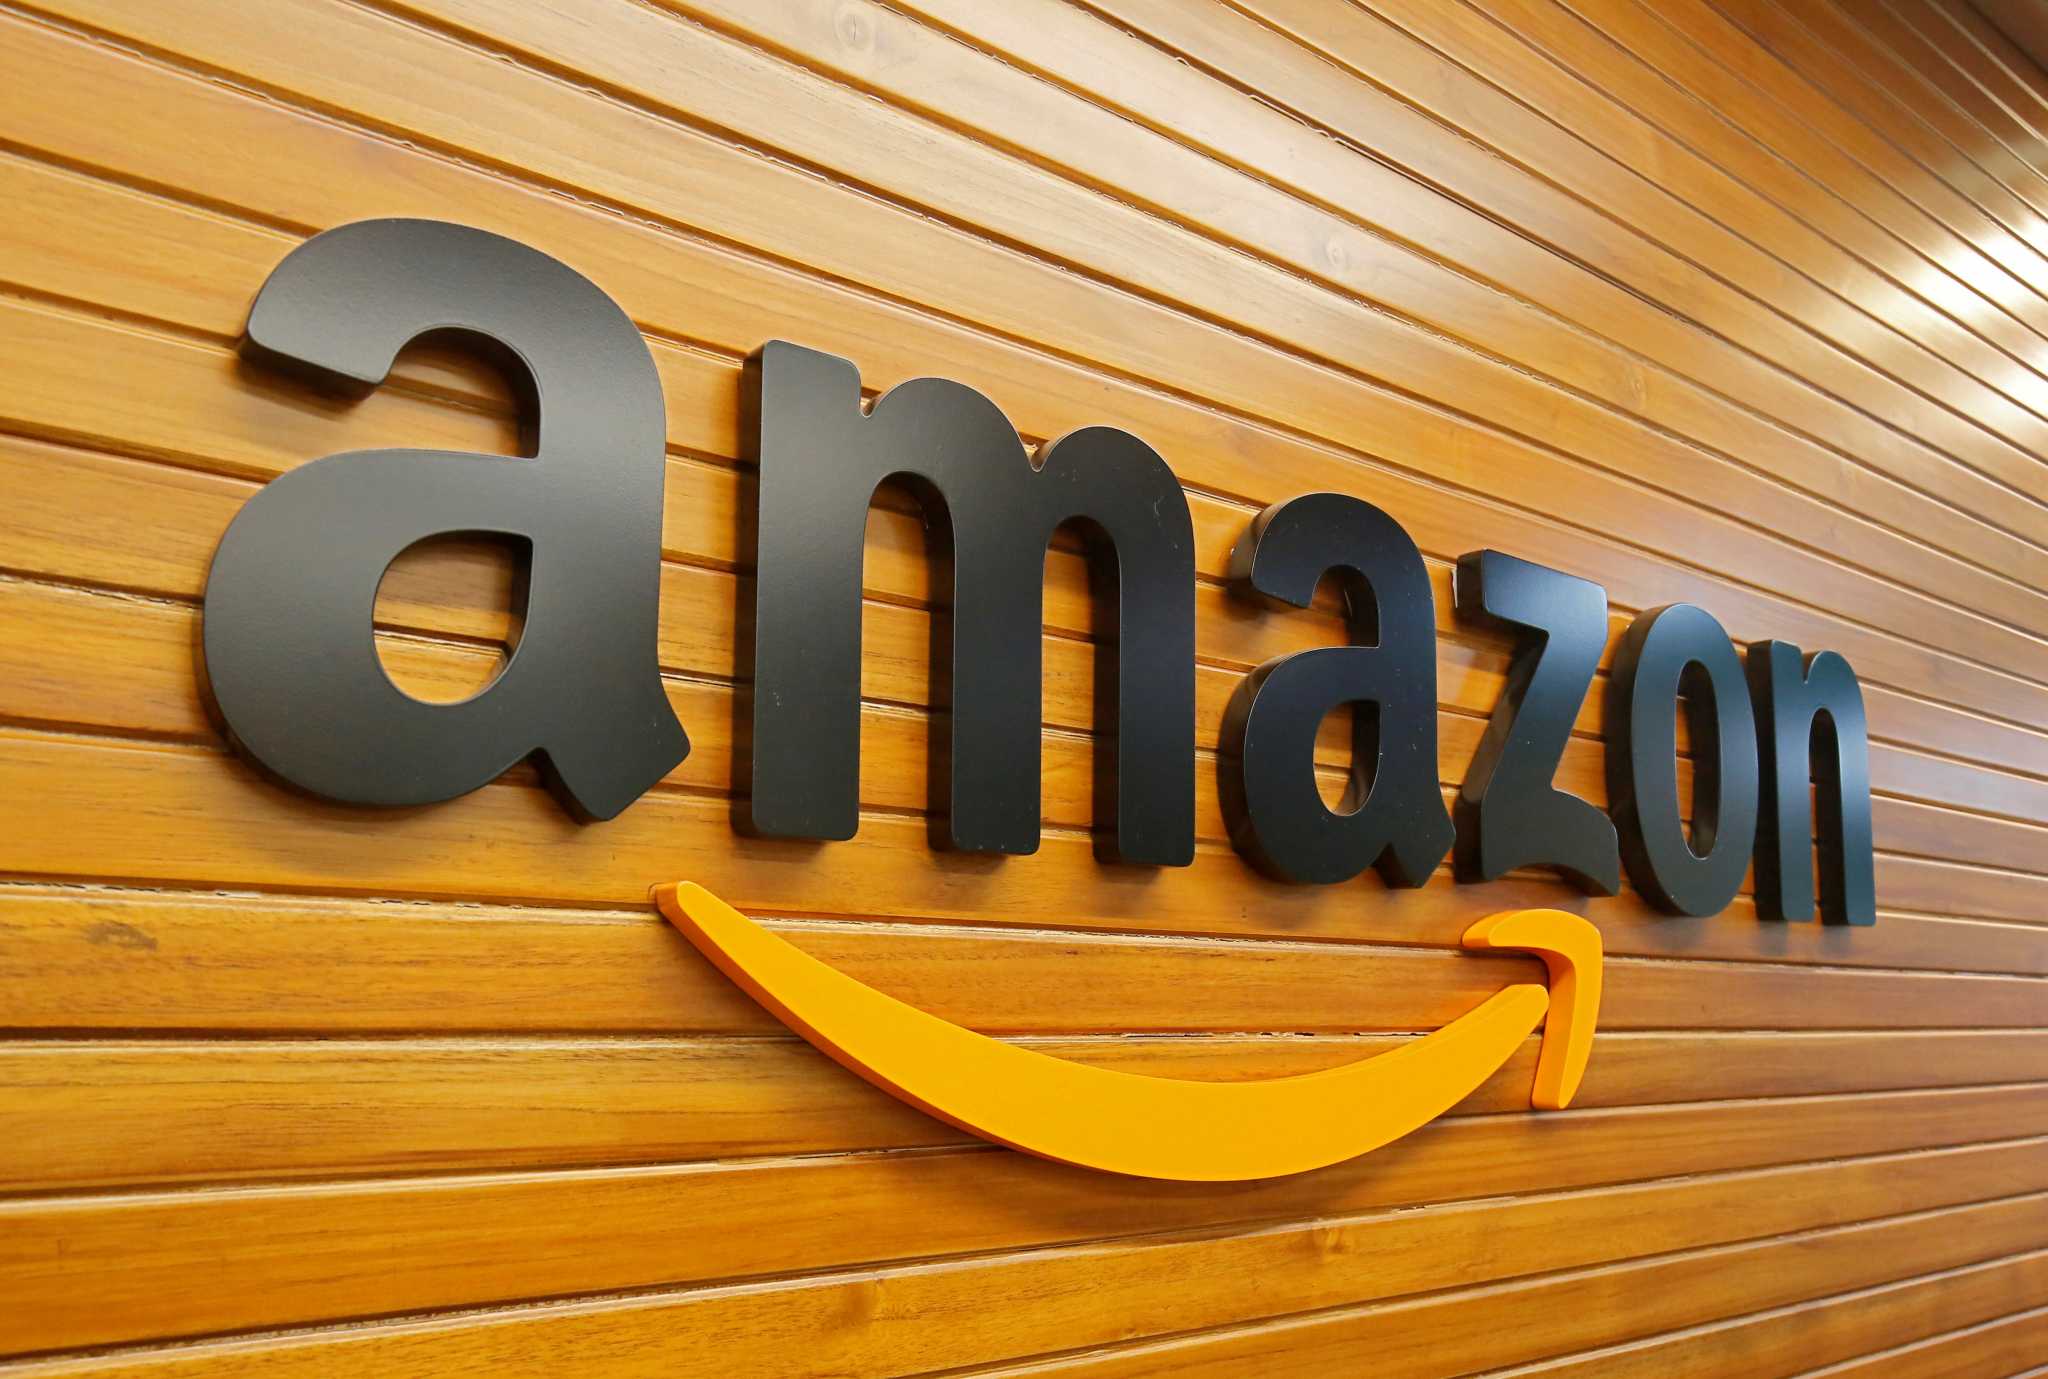 ΗΠΑ: Η Amazon ετοιμάζεται να απολύσει περίπου 10.000 εργαζομένους